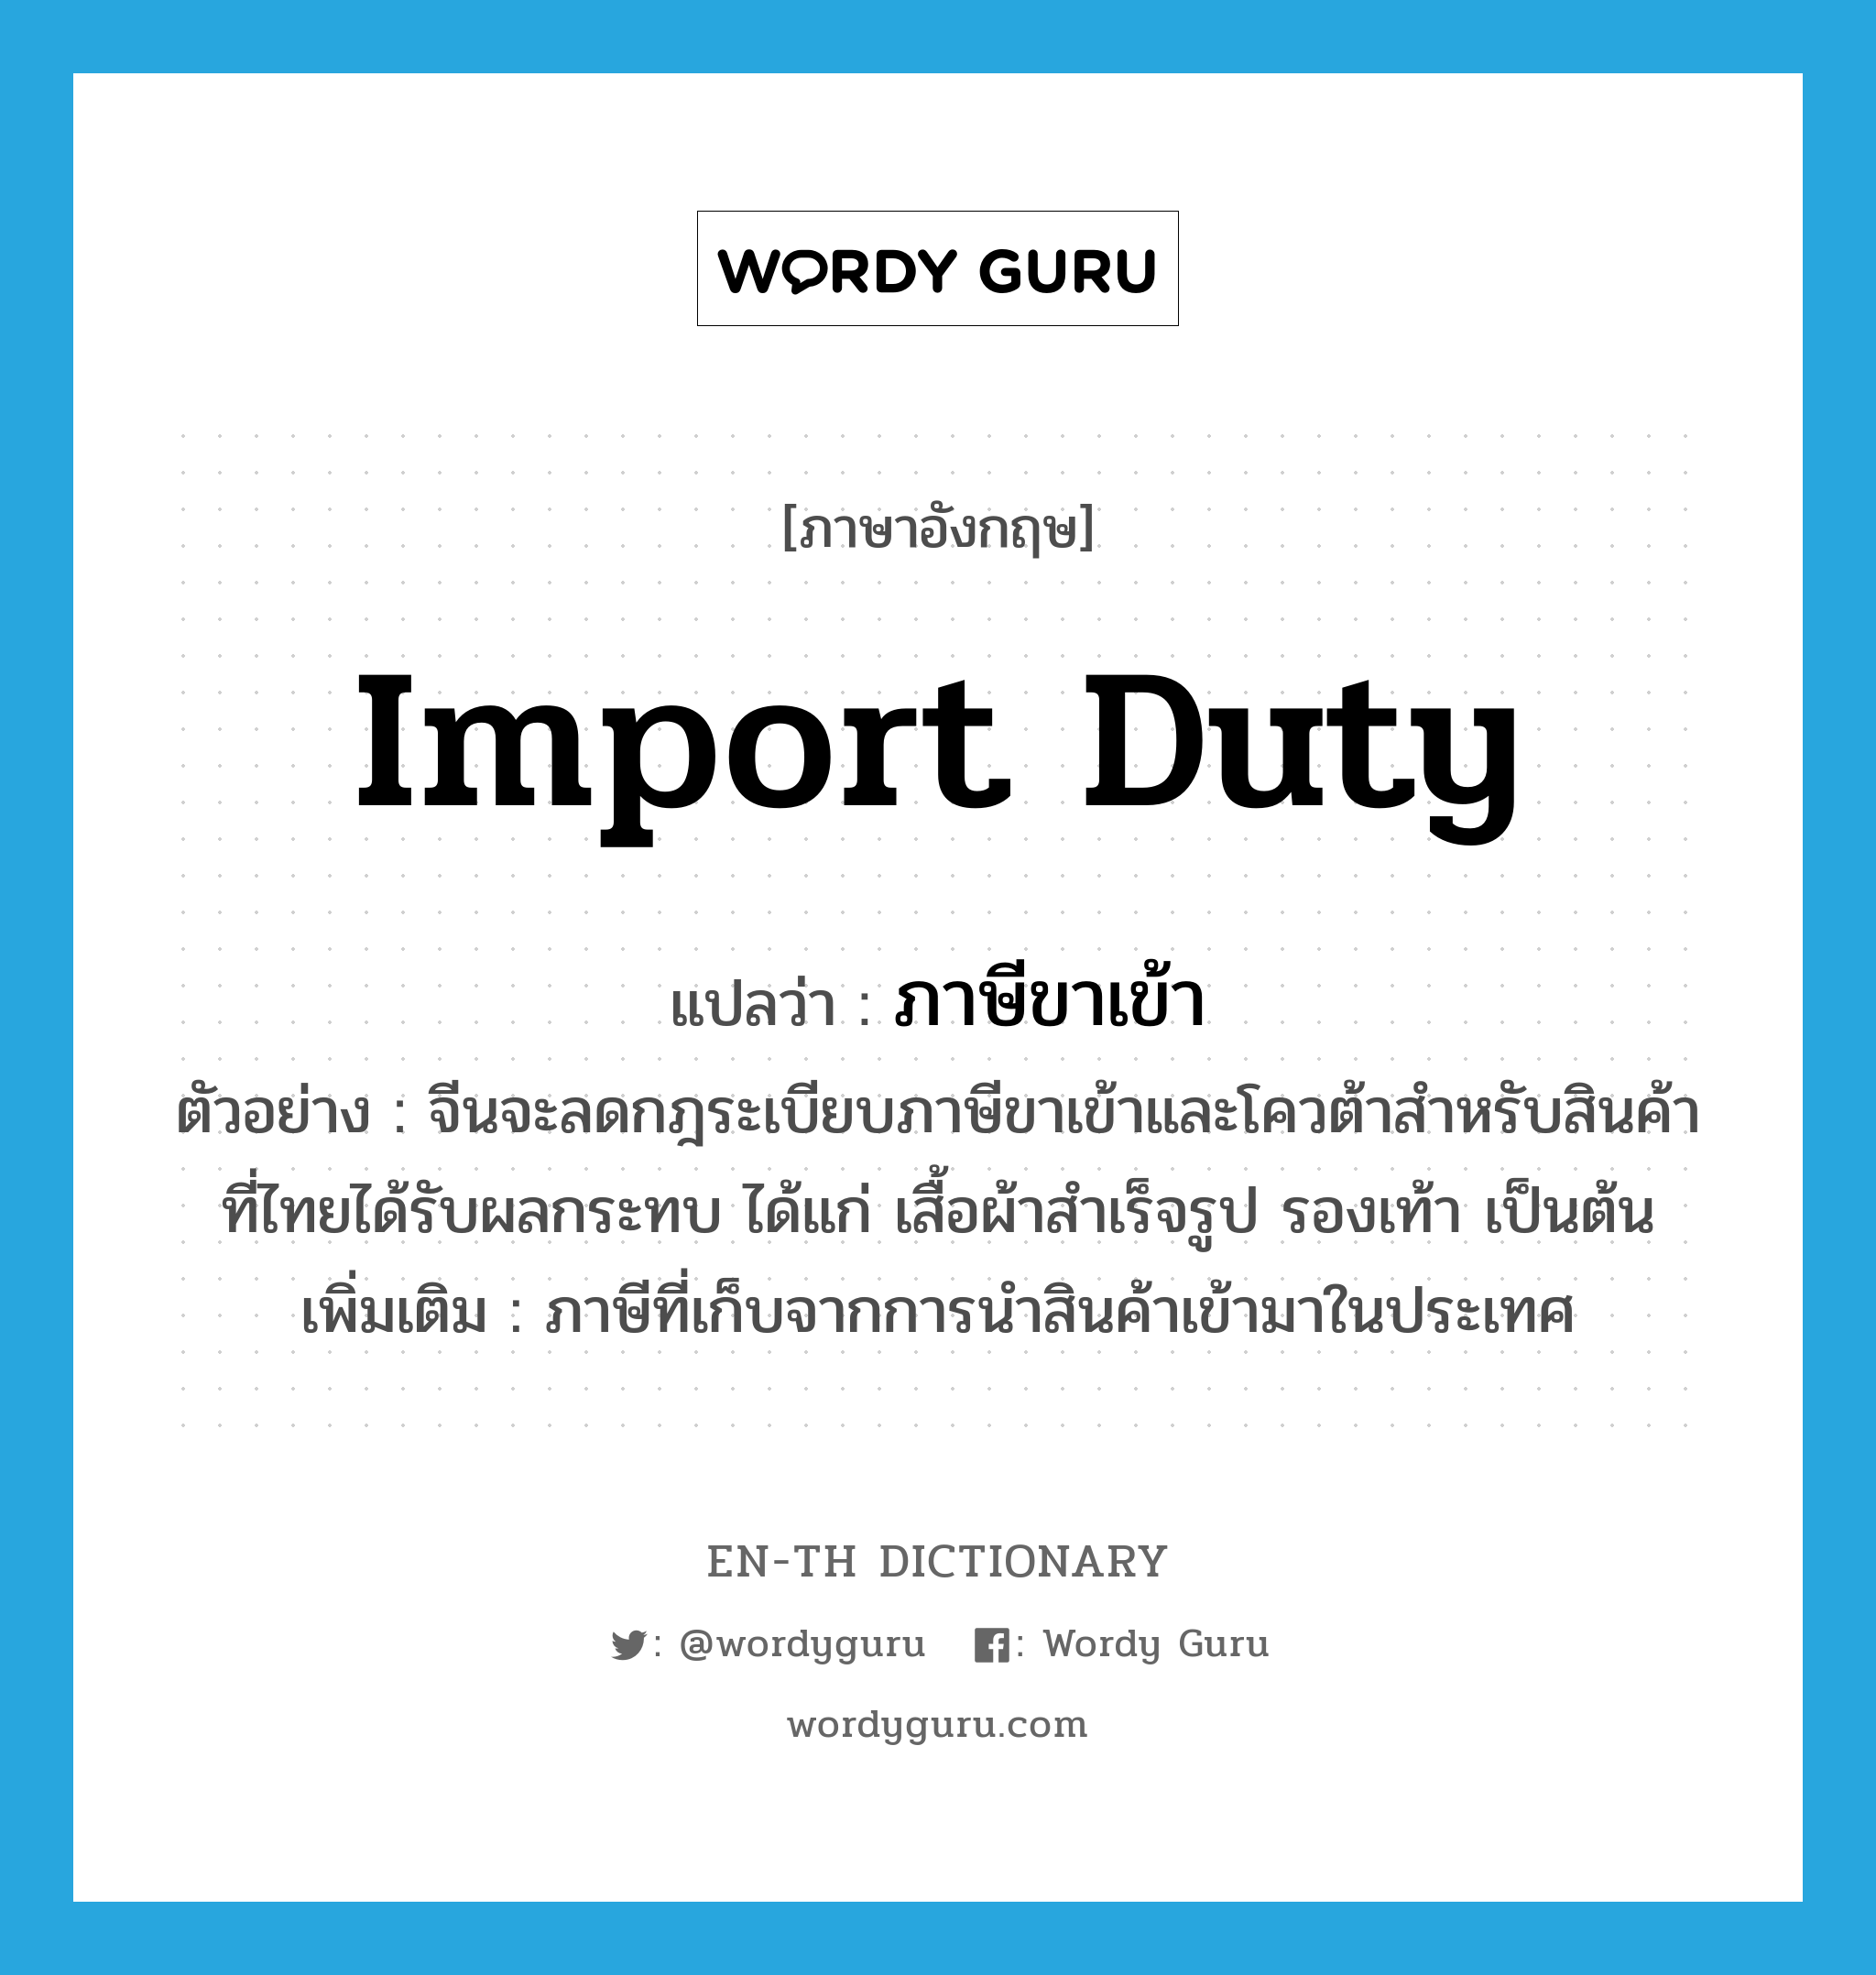 import duty แปลว่า?, คำศัพท์ภาษาอังกฤษ import duty แปลว่า ภาษีขาเข้า ประเภท N ตัวอย่าง จีนจะลดกฎระเบียบภาษีขาเข้าและโควต้าสำหรับสินค้าที่ไทยได้รับผลกระทบ ได้แก่ เสื้อผ้าสำเร็จรูป รองเท้า เป็นต้น เพิ่มเติม ภาษีที่เก็บจากการนำสินค้าเข้ามาในประเทศ หมวด N